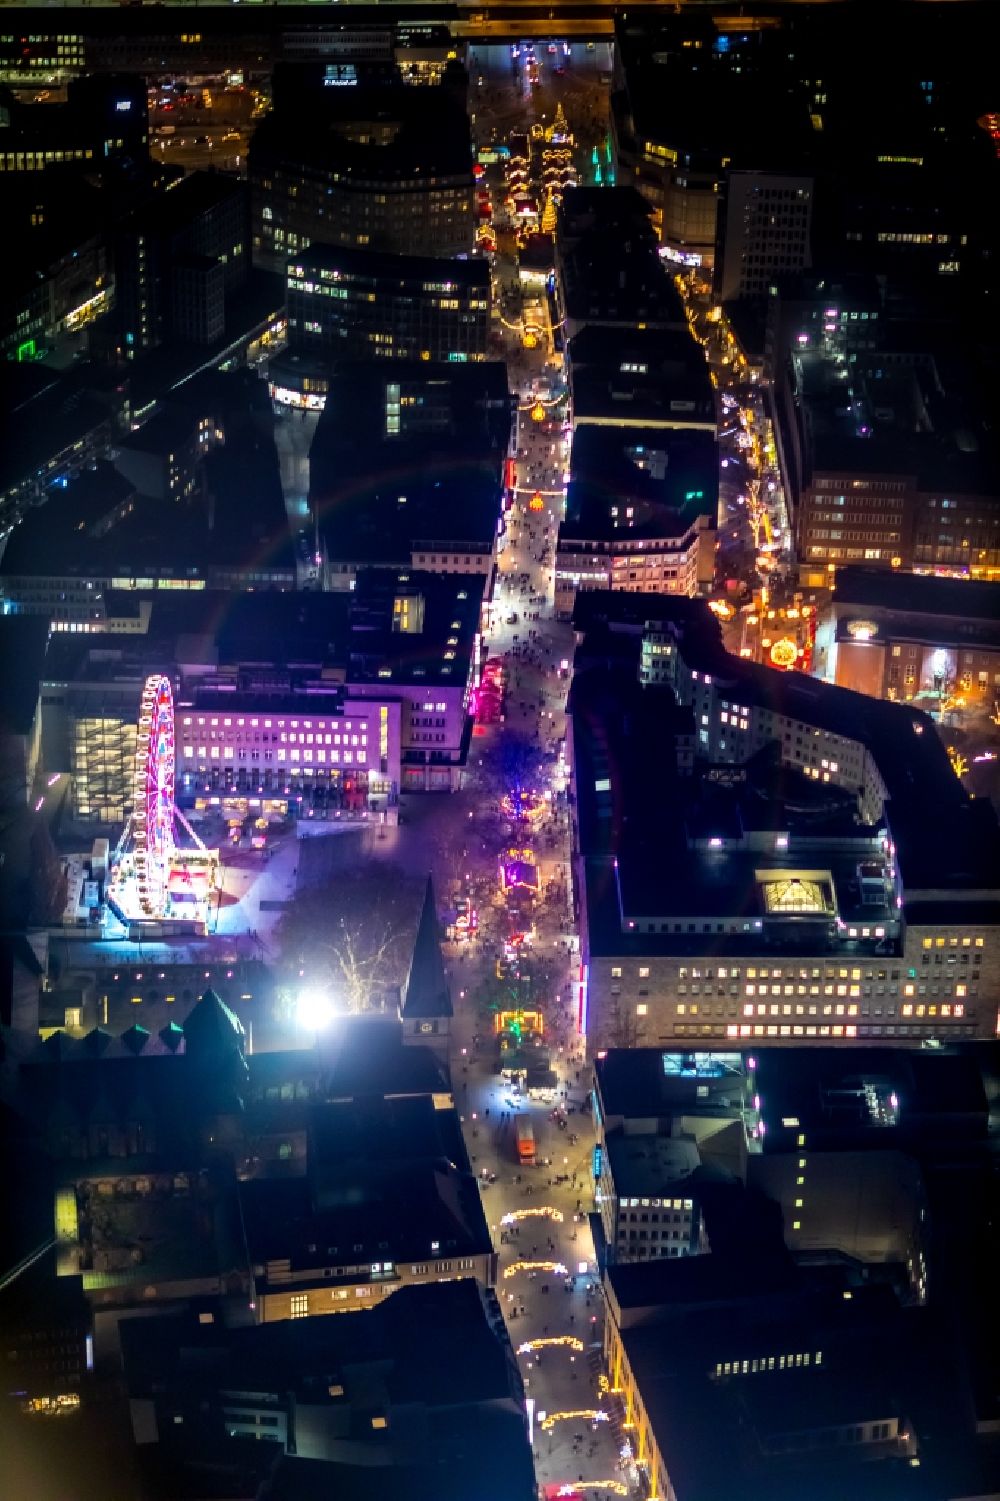 Nacht-Luftaufnahme Essen - Nachtluftbild Weihnachtsmarkt- Veranstaltungsgelände in Essen im Bundesland Nordrhein-Westfalen, Deutschland